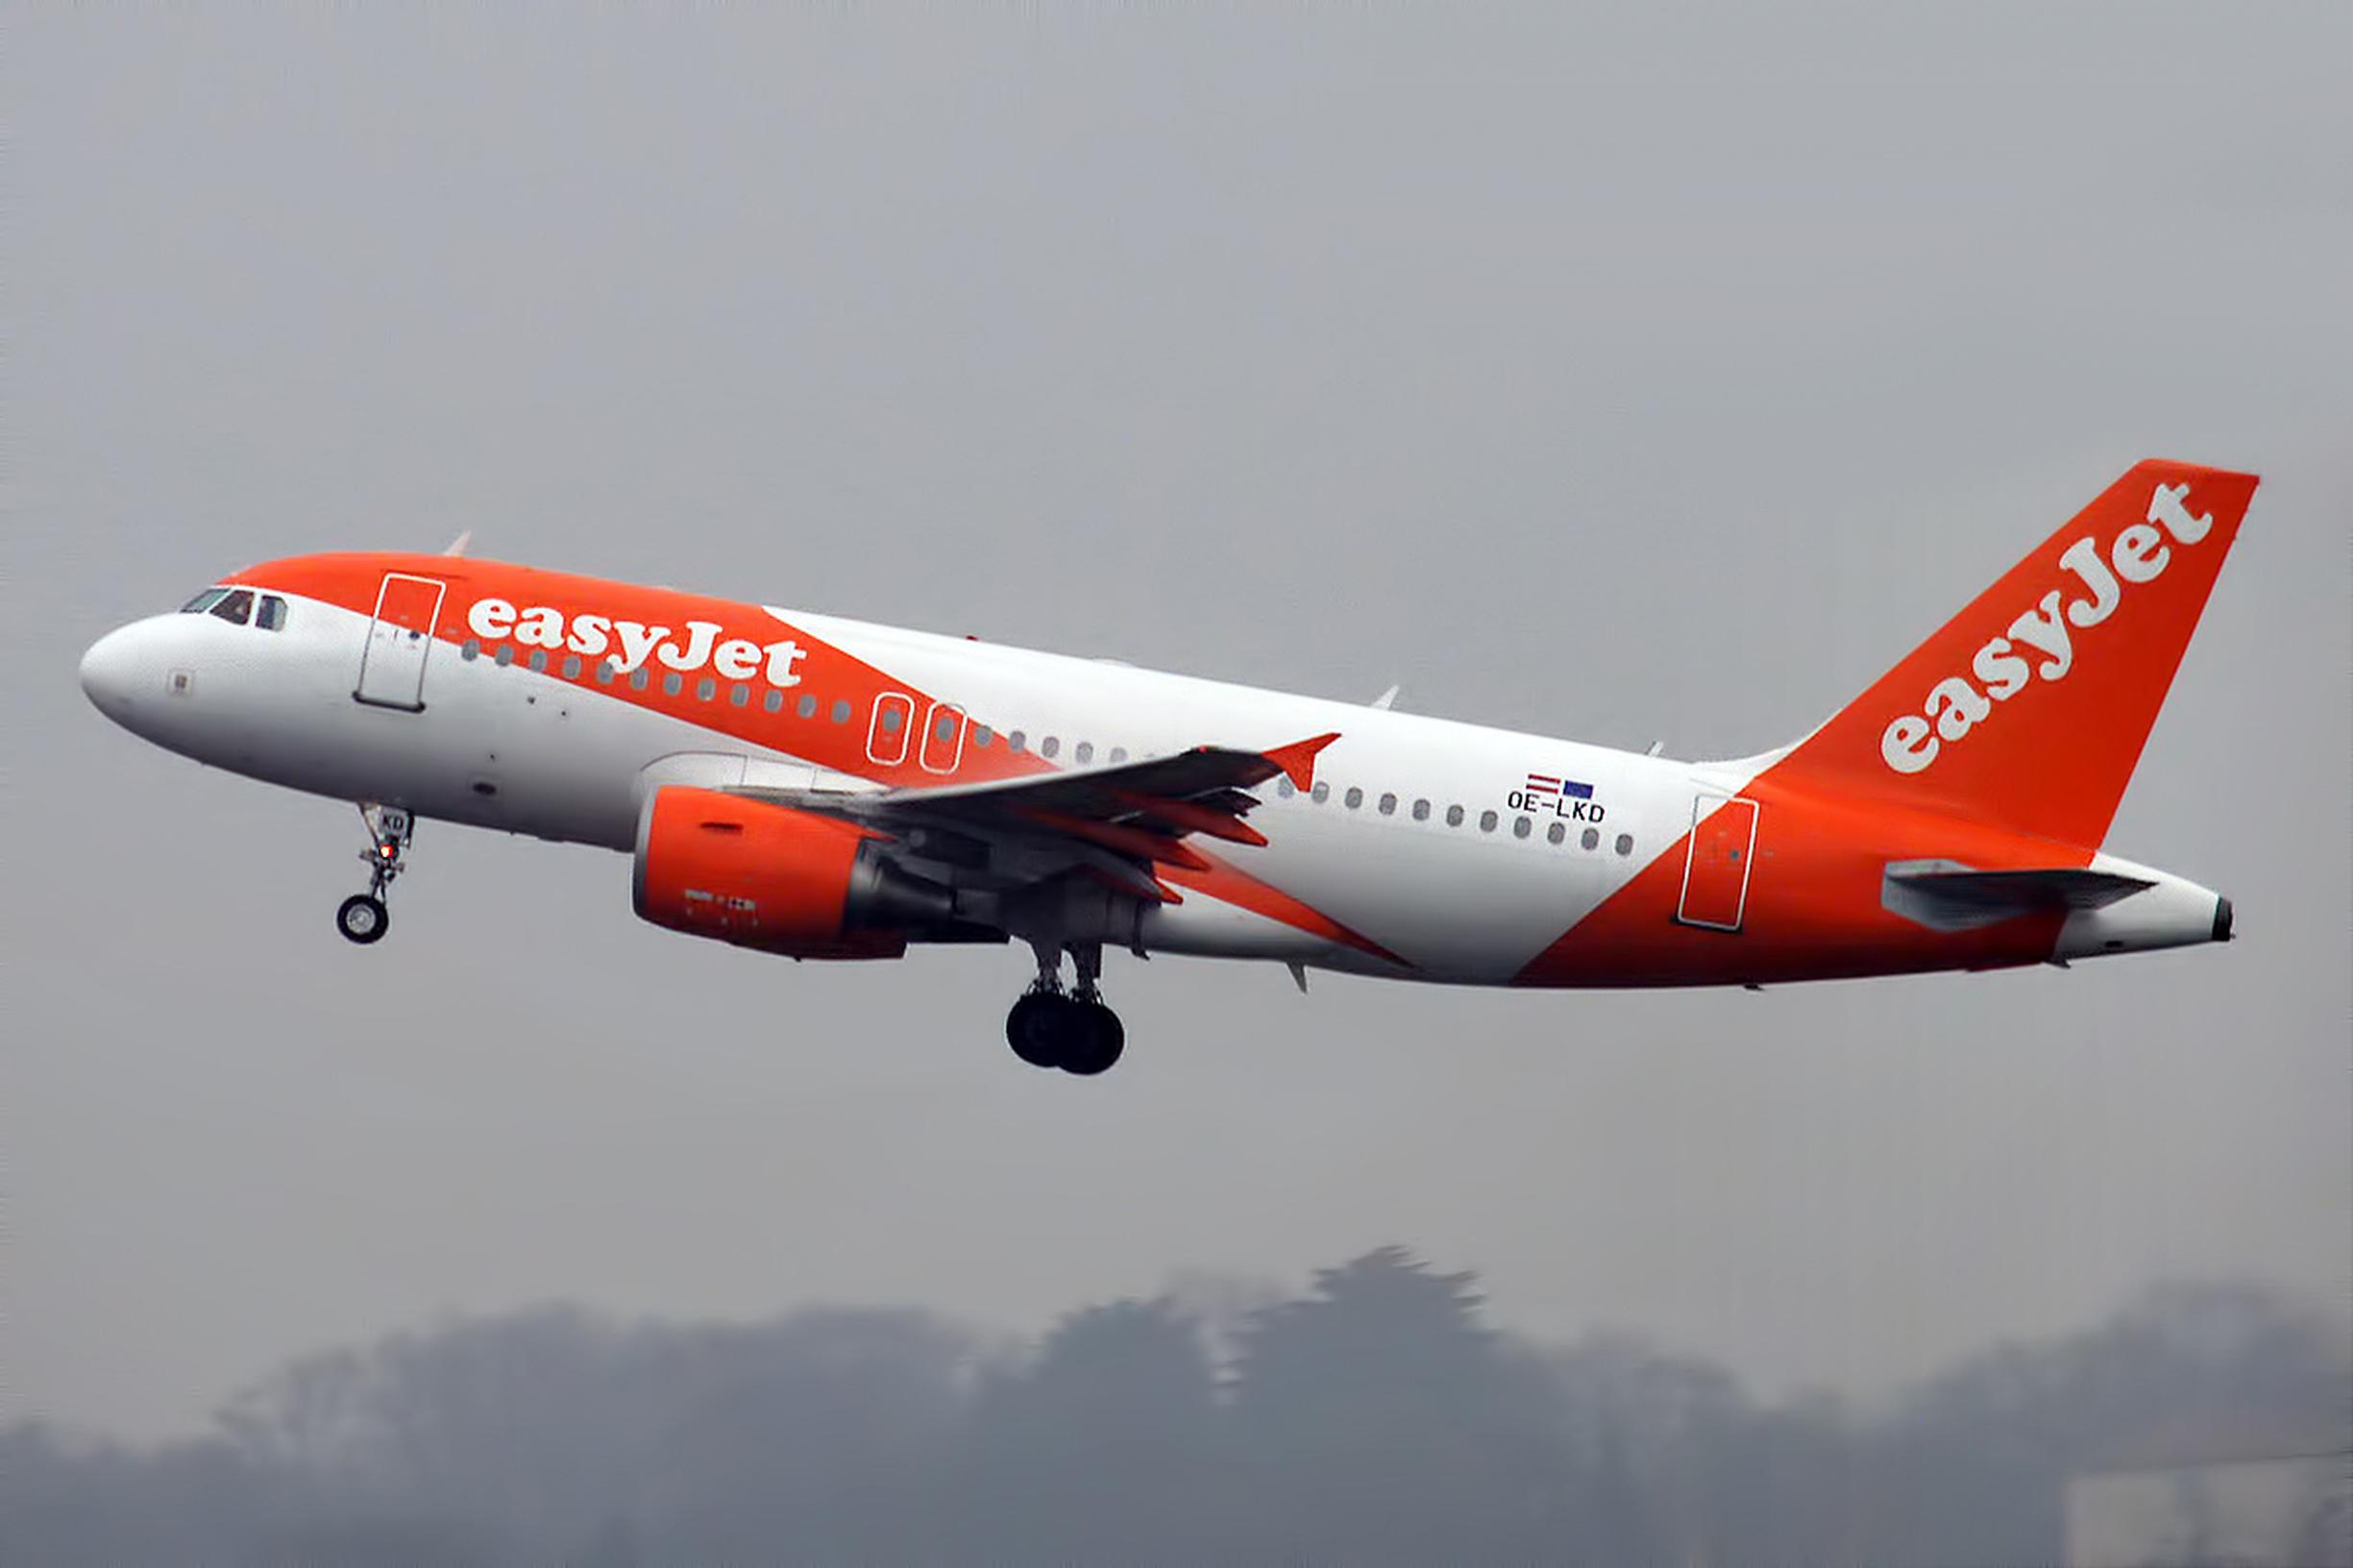 EasyJet will restart flights on 15 June